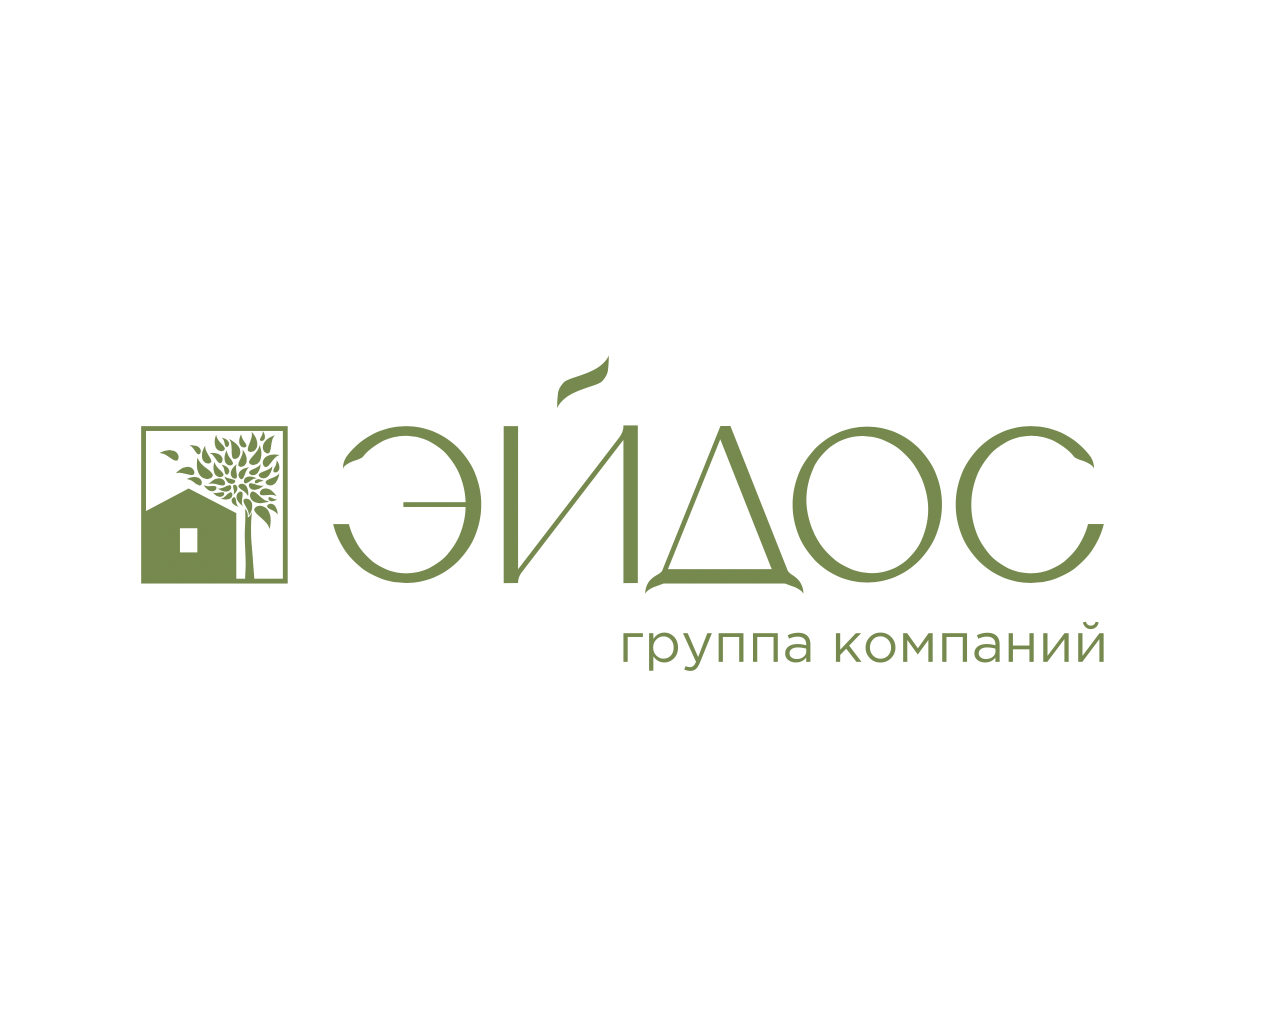 1 development ru. Eidos logo.